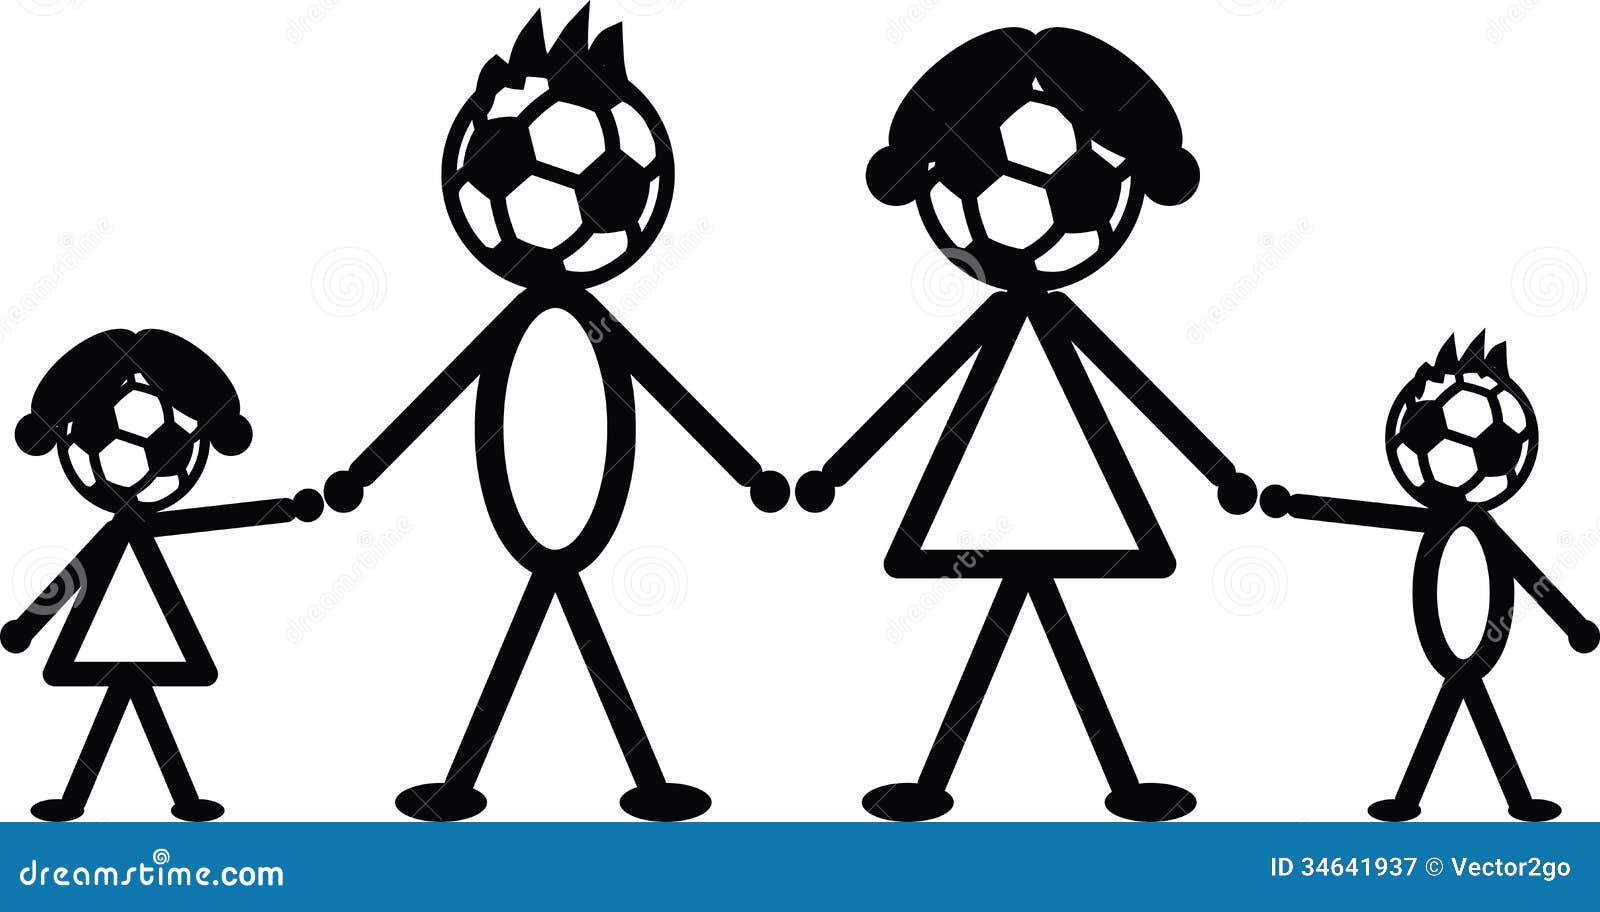 Soccer stick family stock vector. Illustration of family ...